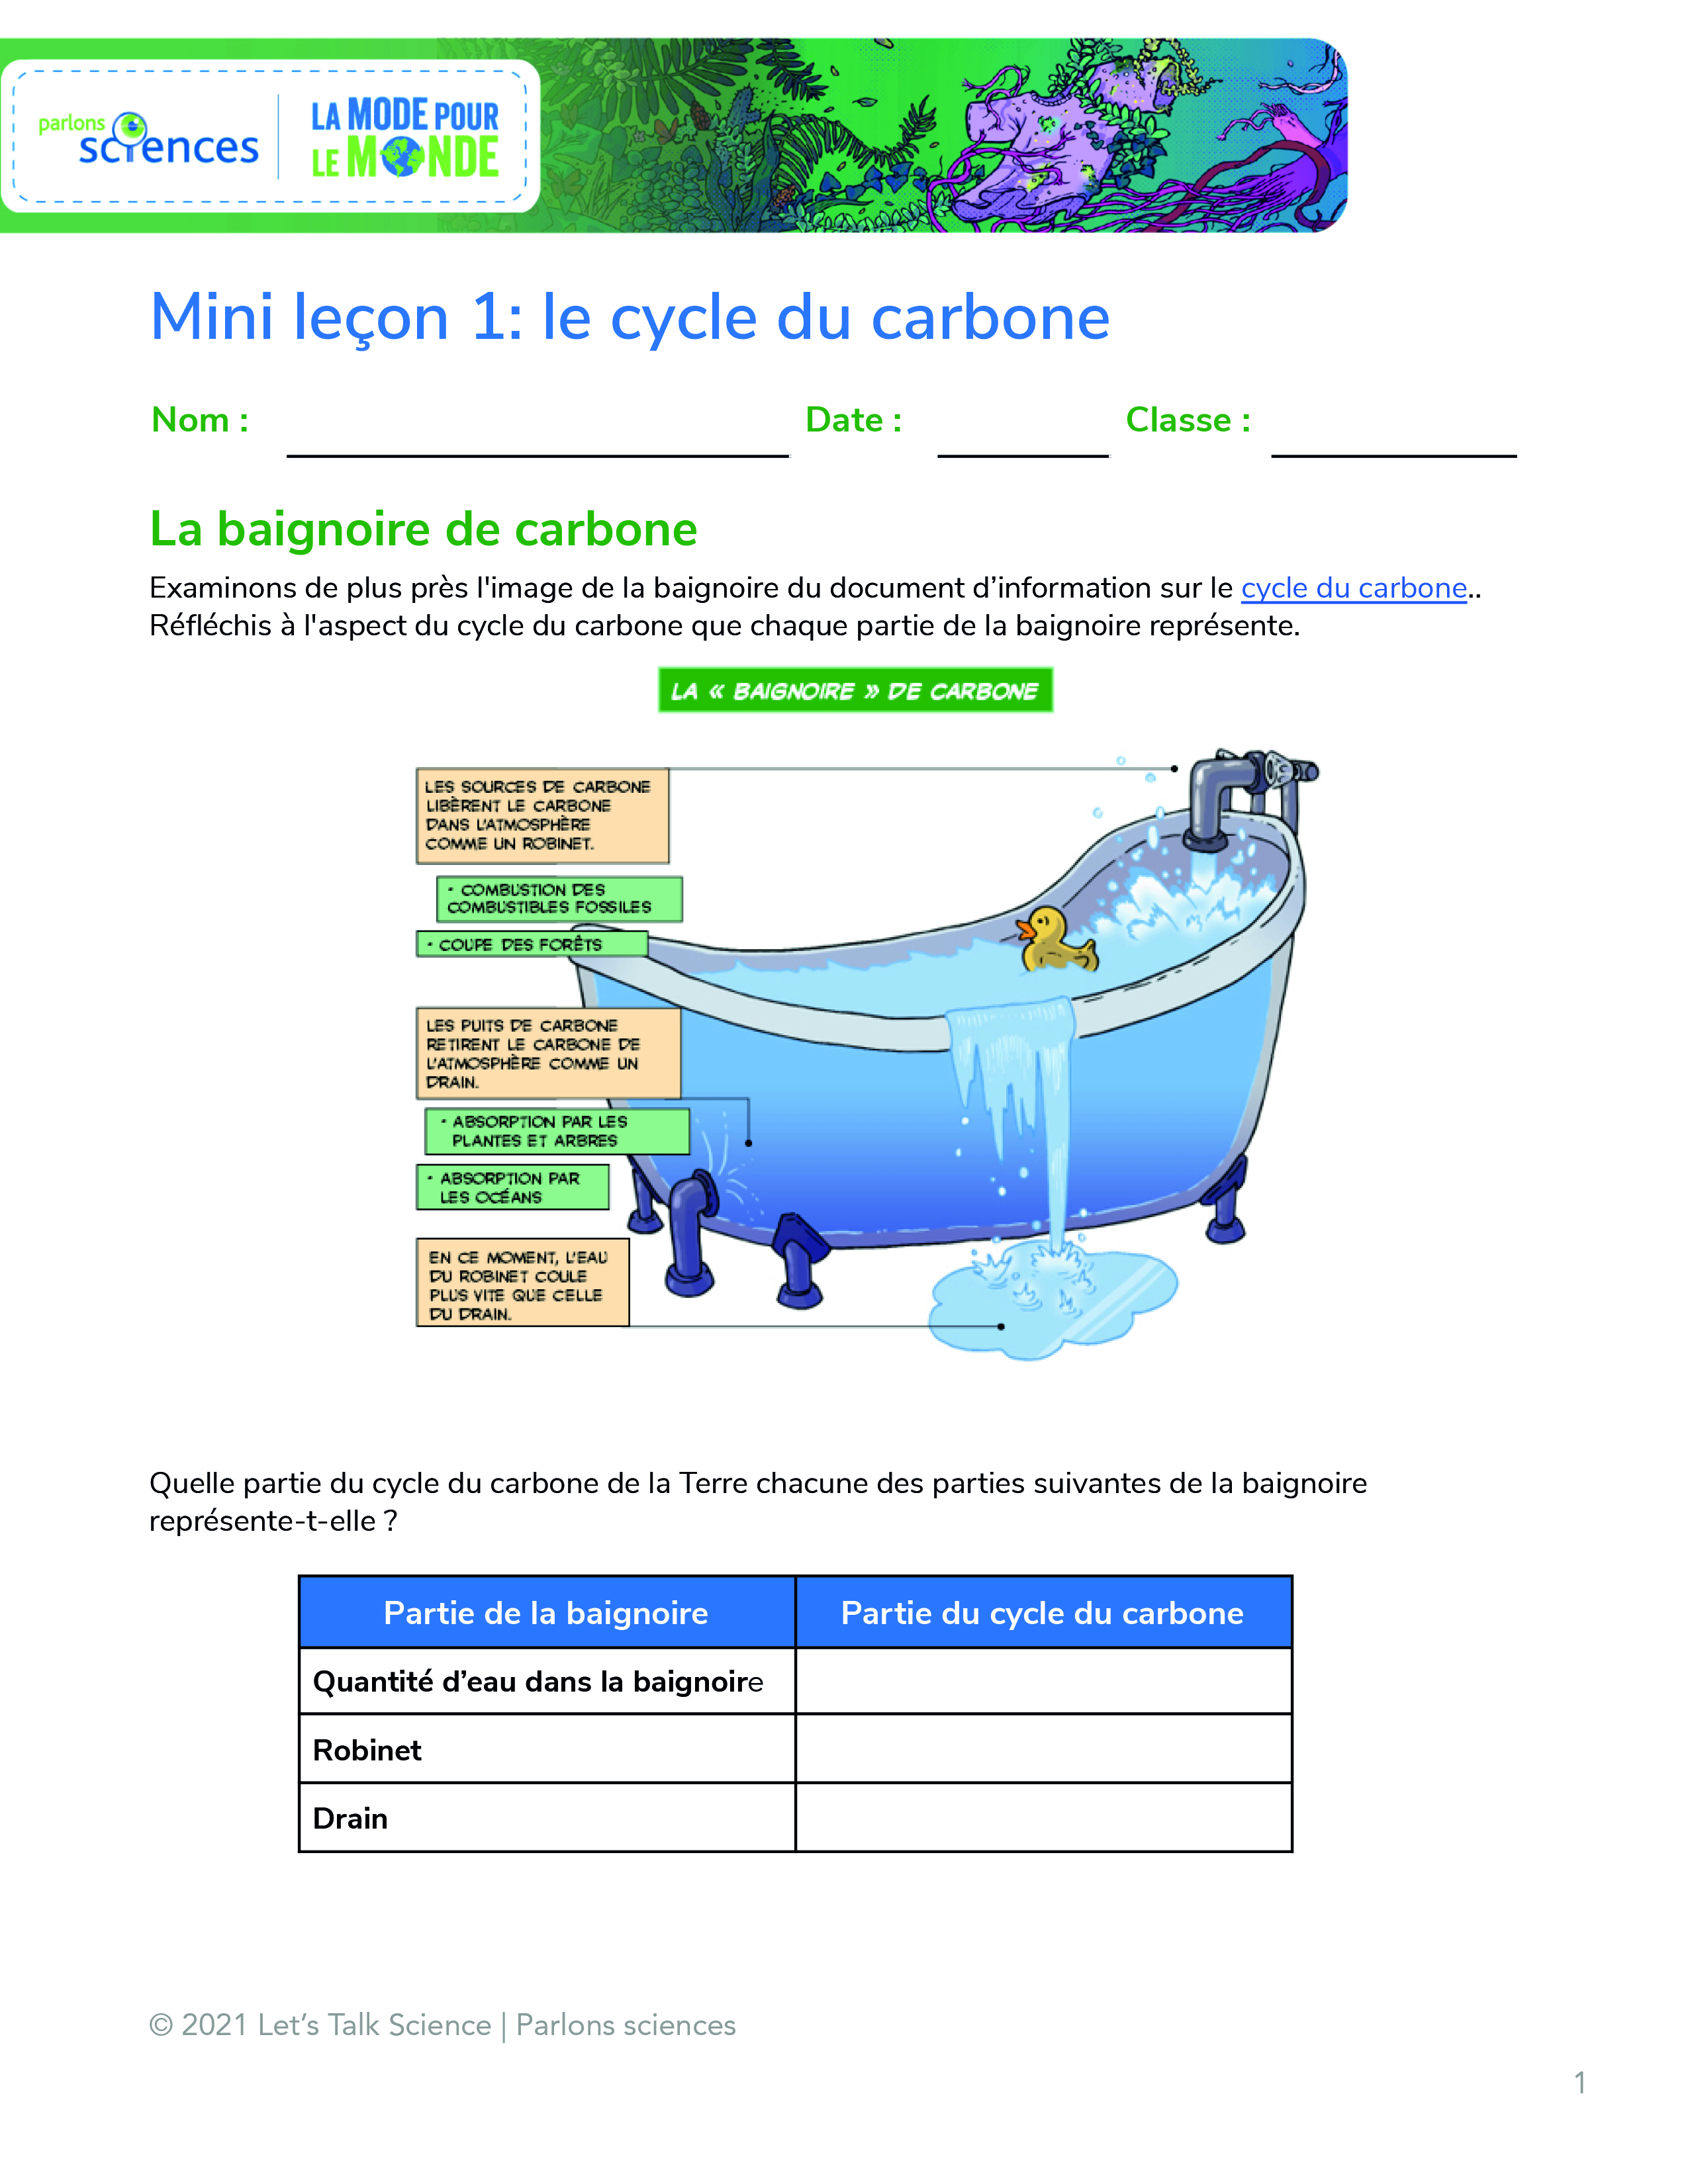 Le cycle du carbone-1.jpg